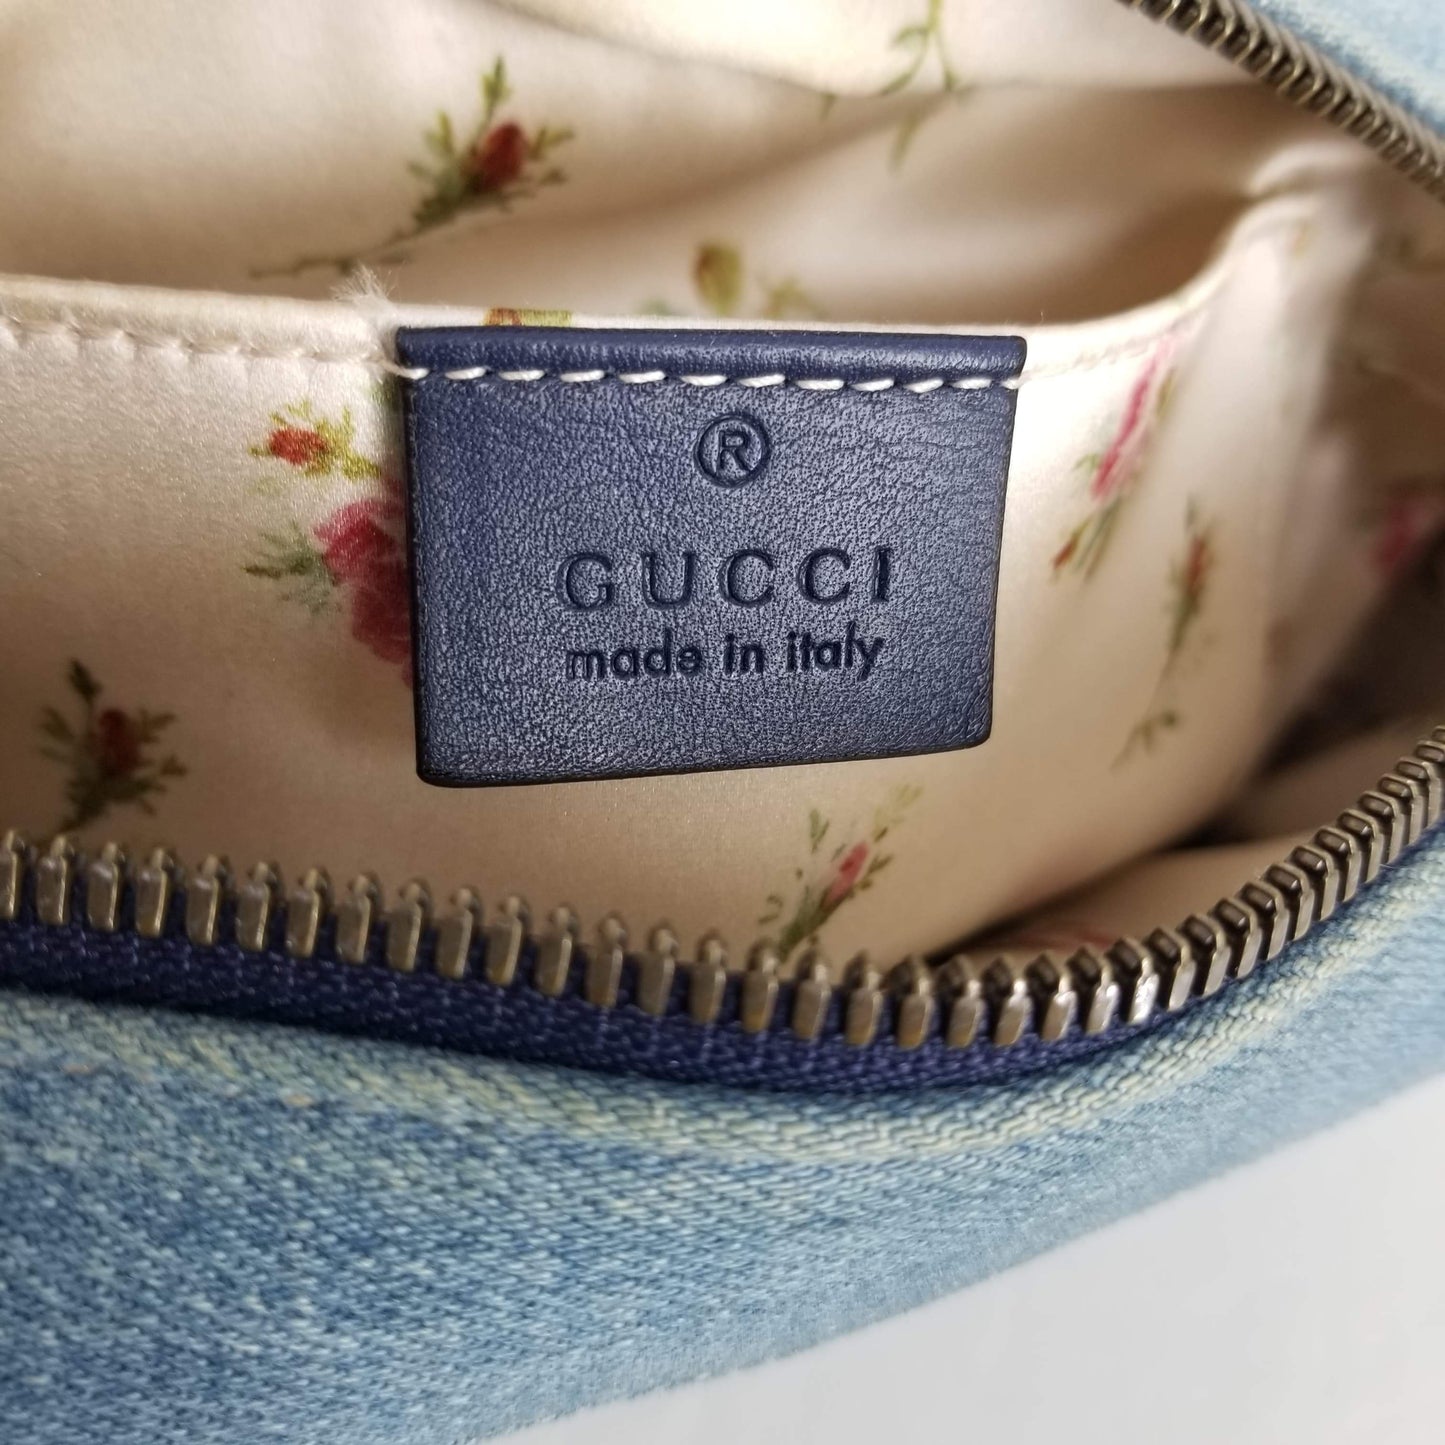 Authentic Gucci Denim Camera Bag Pearl GG’s